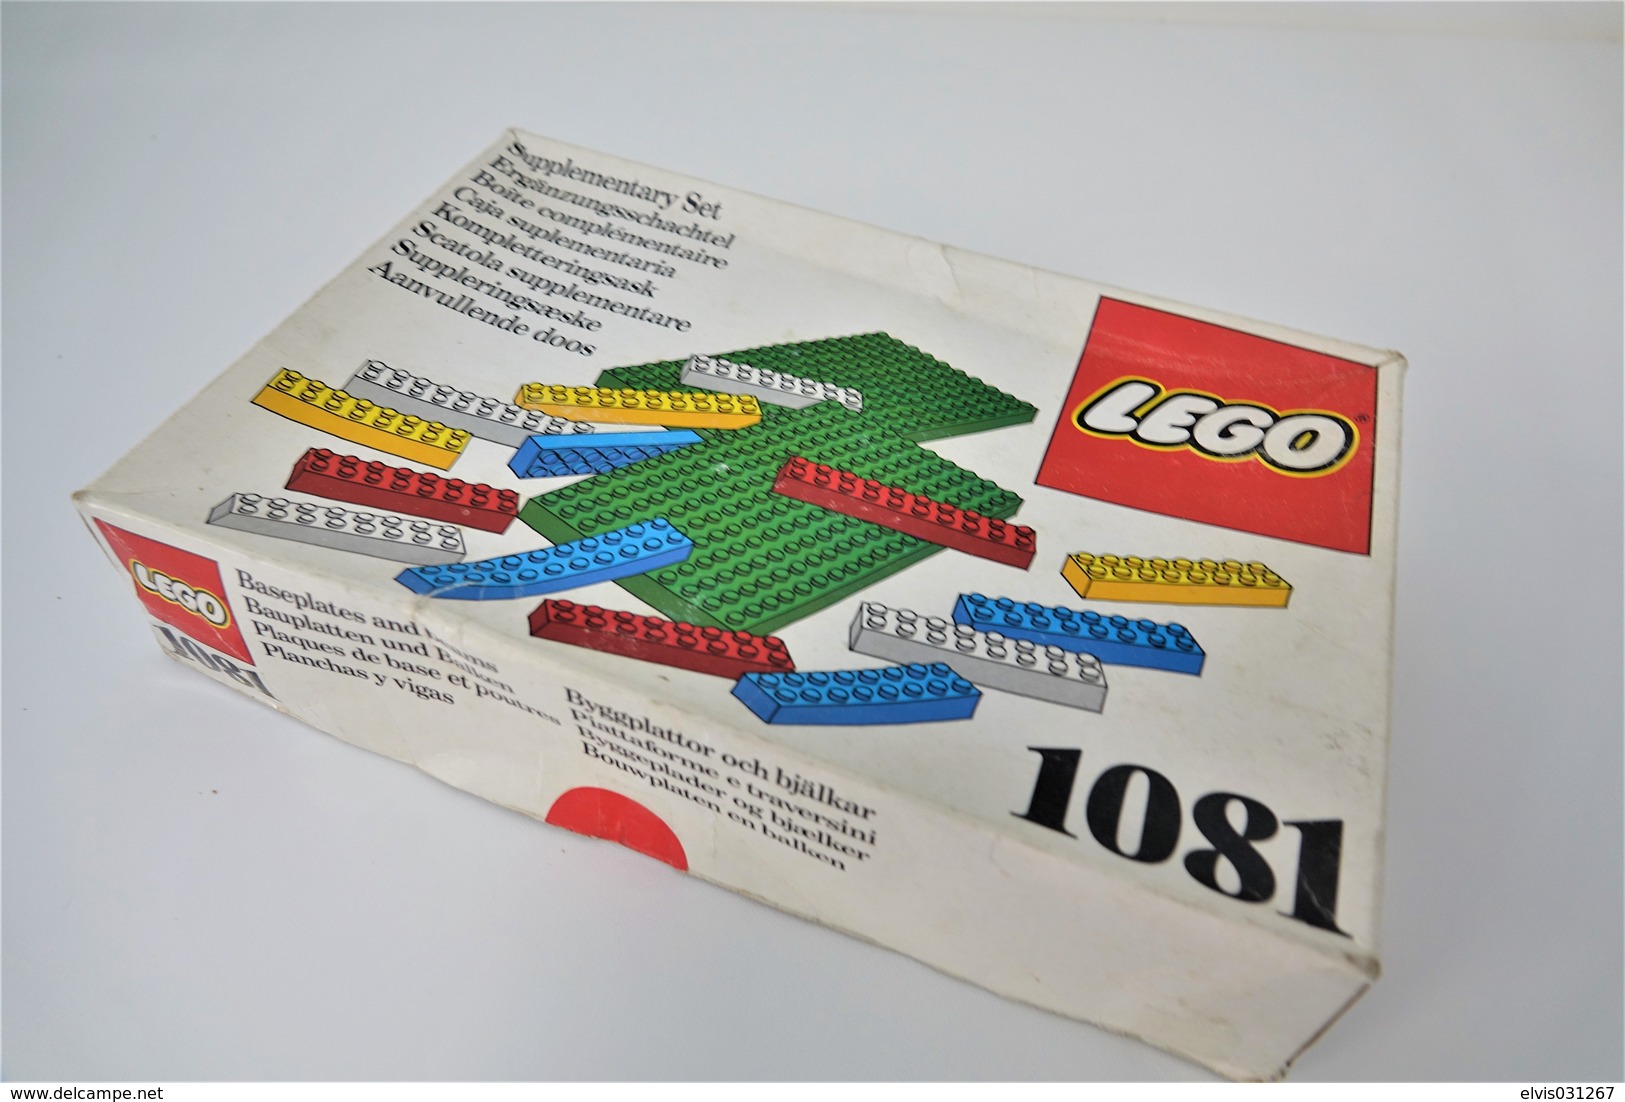 LEGO - 1081 Supplementary Box - Very Rare - Original Box - Original Lego 1976 - Vintage - Catalogues